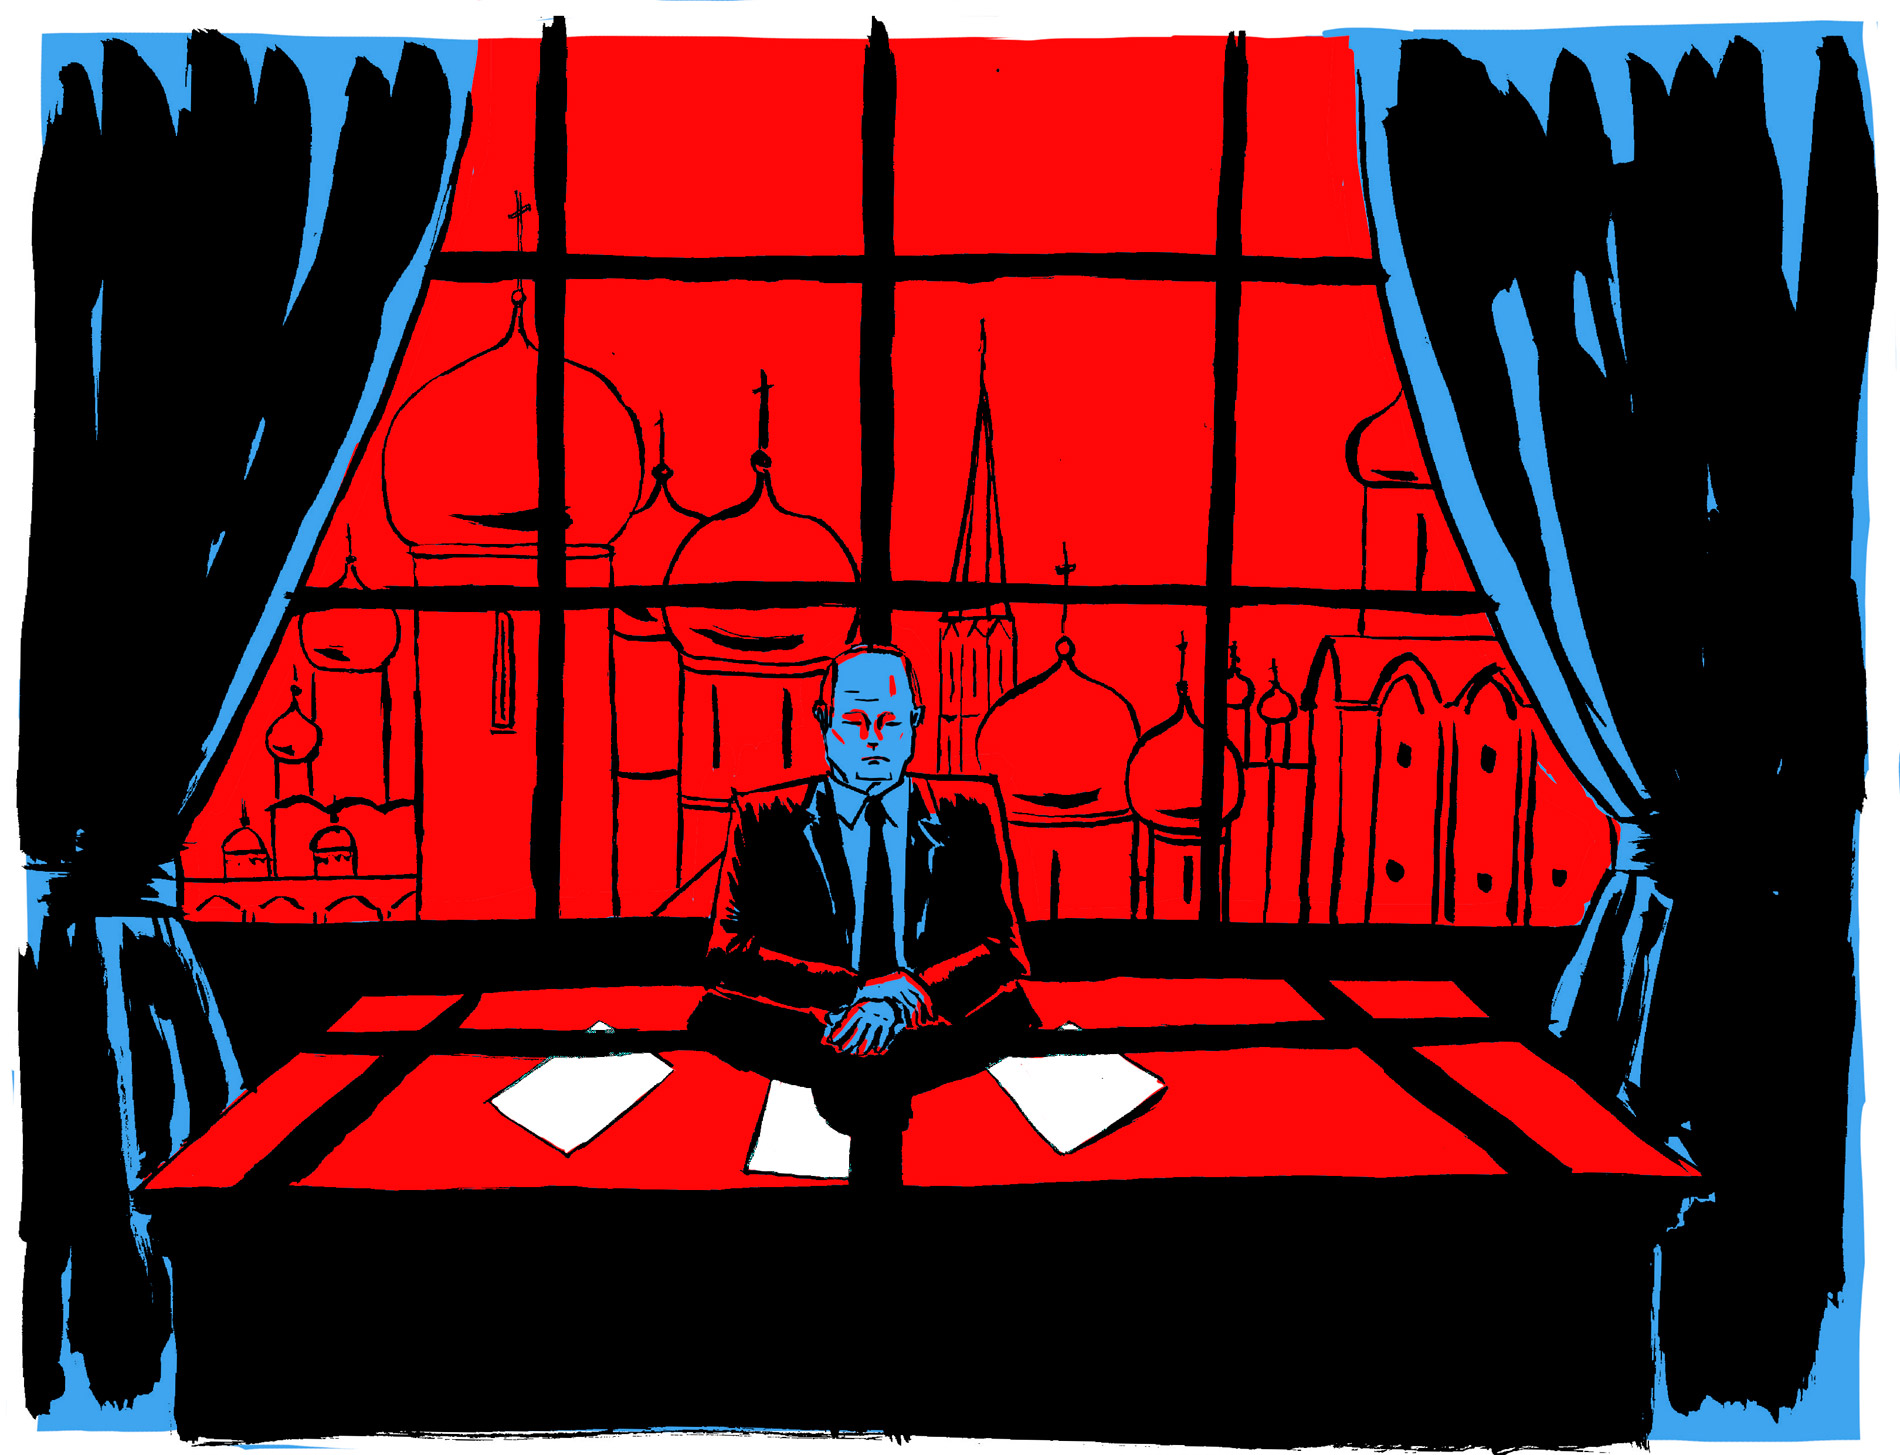 Élections en Russie : l'éternel fuite en avant de Vladimir Poutine. Illustrations de Tommy Dessine.